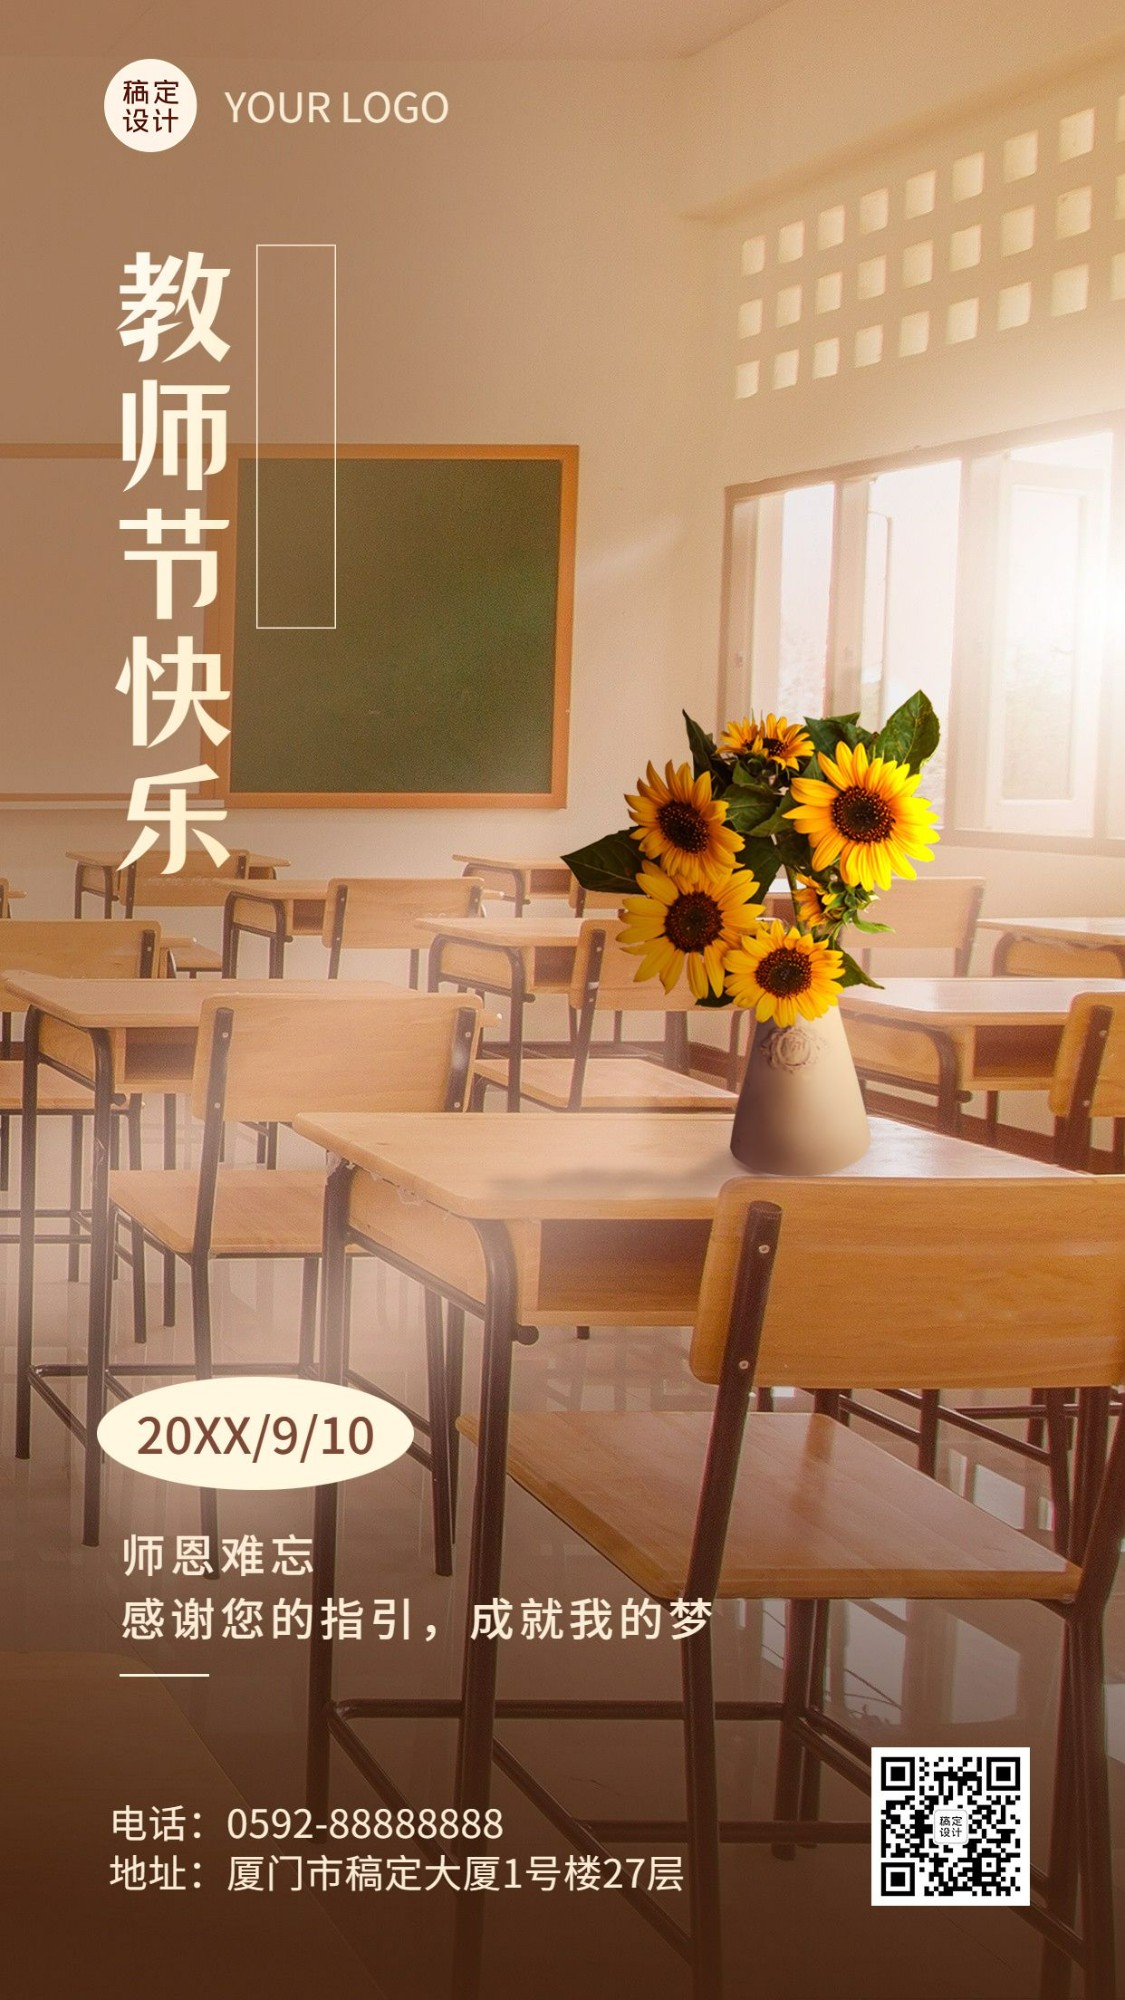 教师节节日祝福实景排版手机海报预览效果